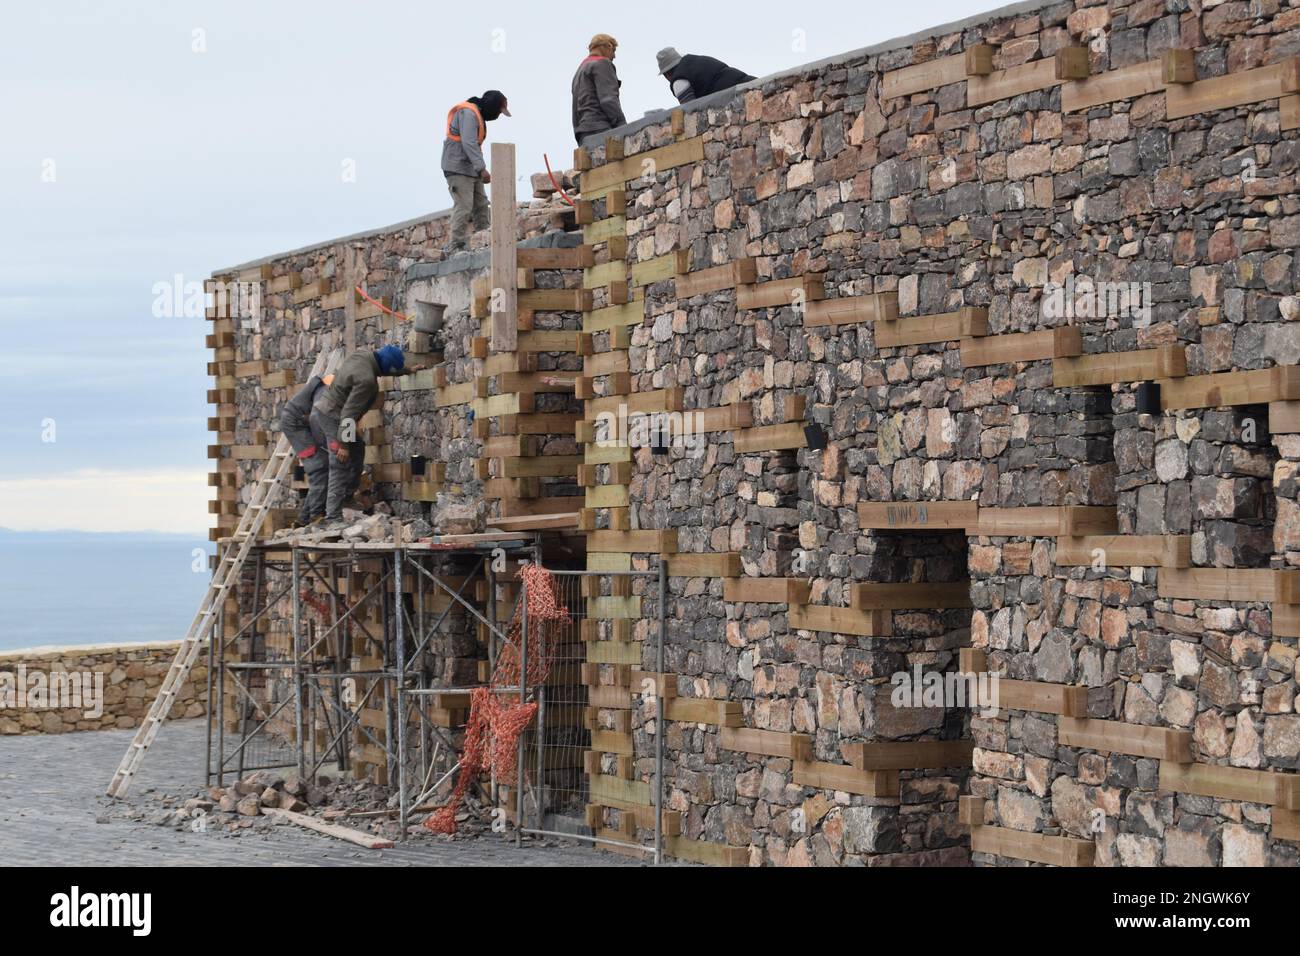 Bauarbeiter in der Kasbah in Agadir, Marokko, bauen Erdbeben widerstandsfähige Wände: Mörtelfreie Schichten von trockenem Stein wechseln sich mit Holz ab. Stockfoto